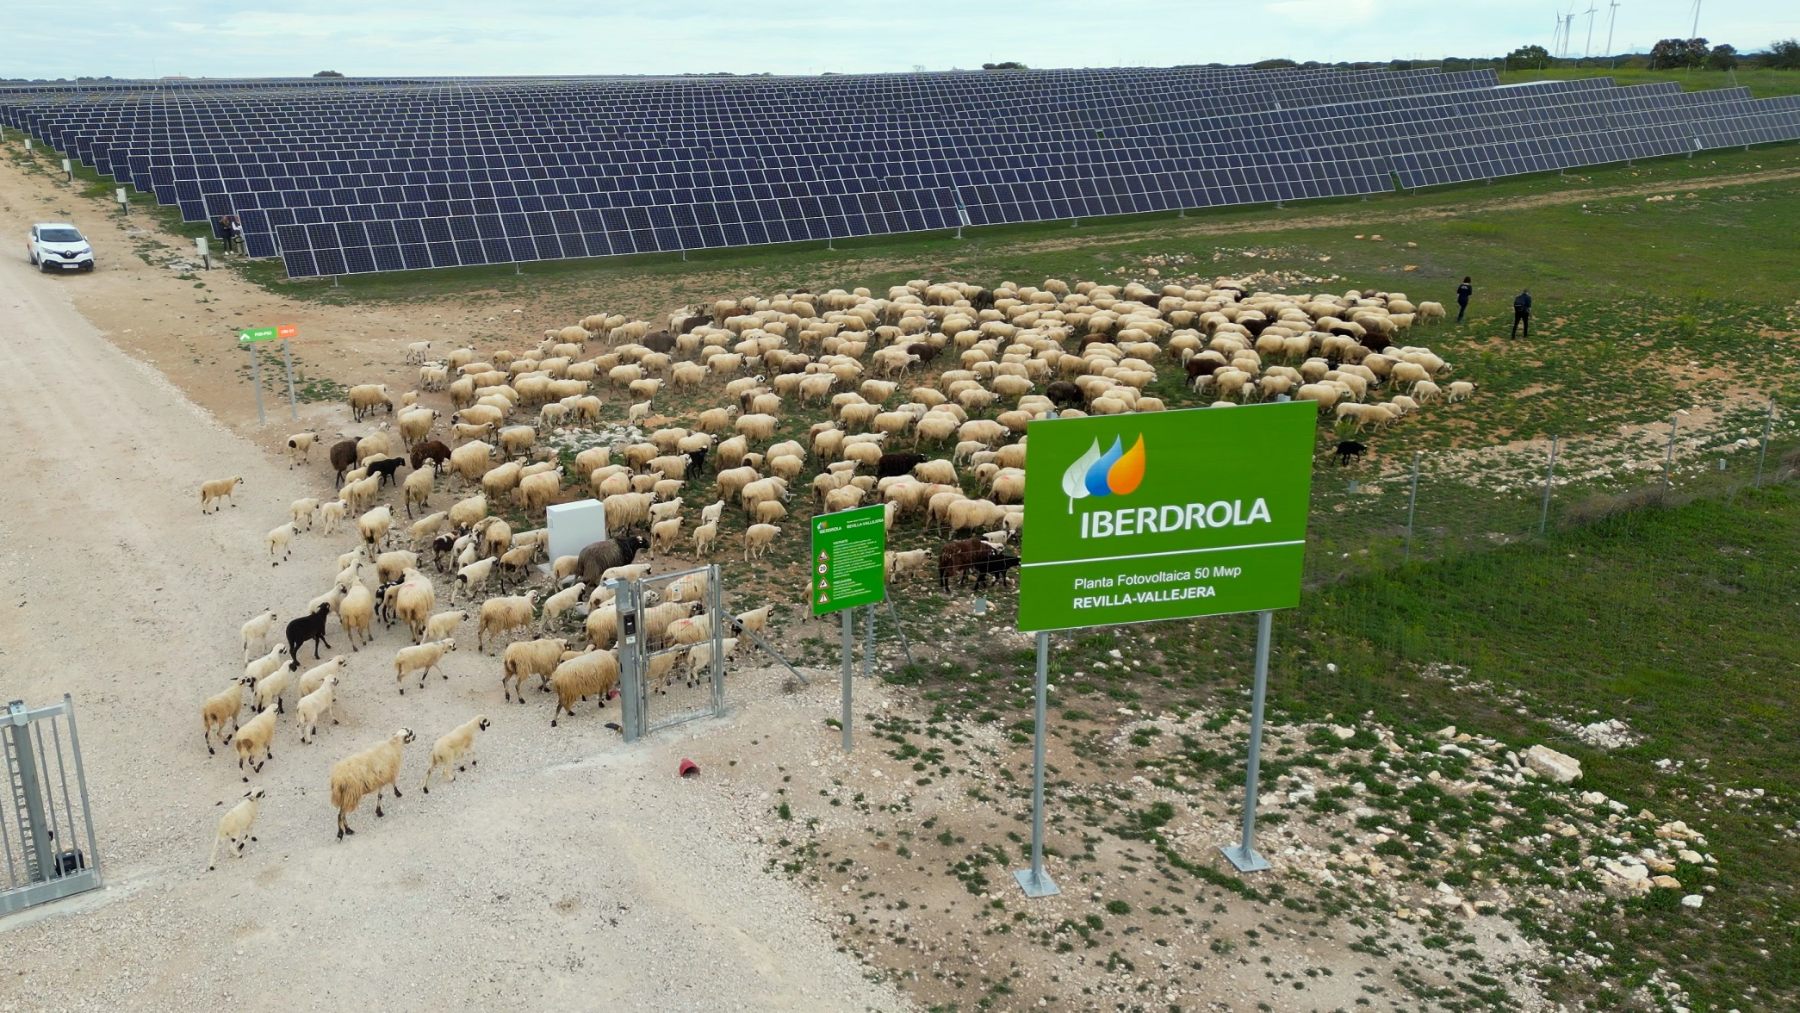 Distintas acciones de la compañía van encaminadas a una mejora de la biodiversidad, como la combinación de las plantas fotovoltaicas con el pastoreo